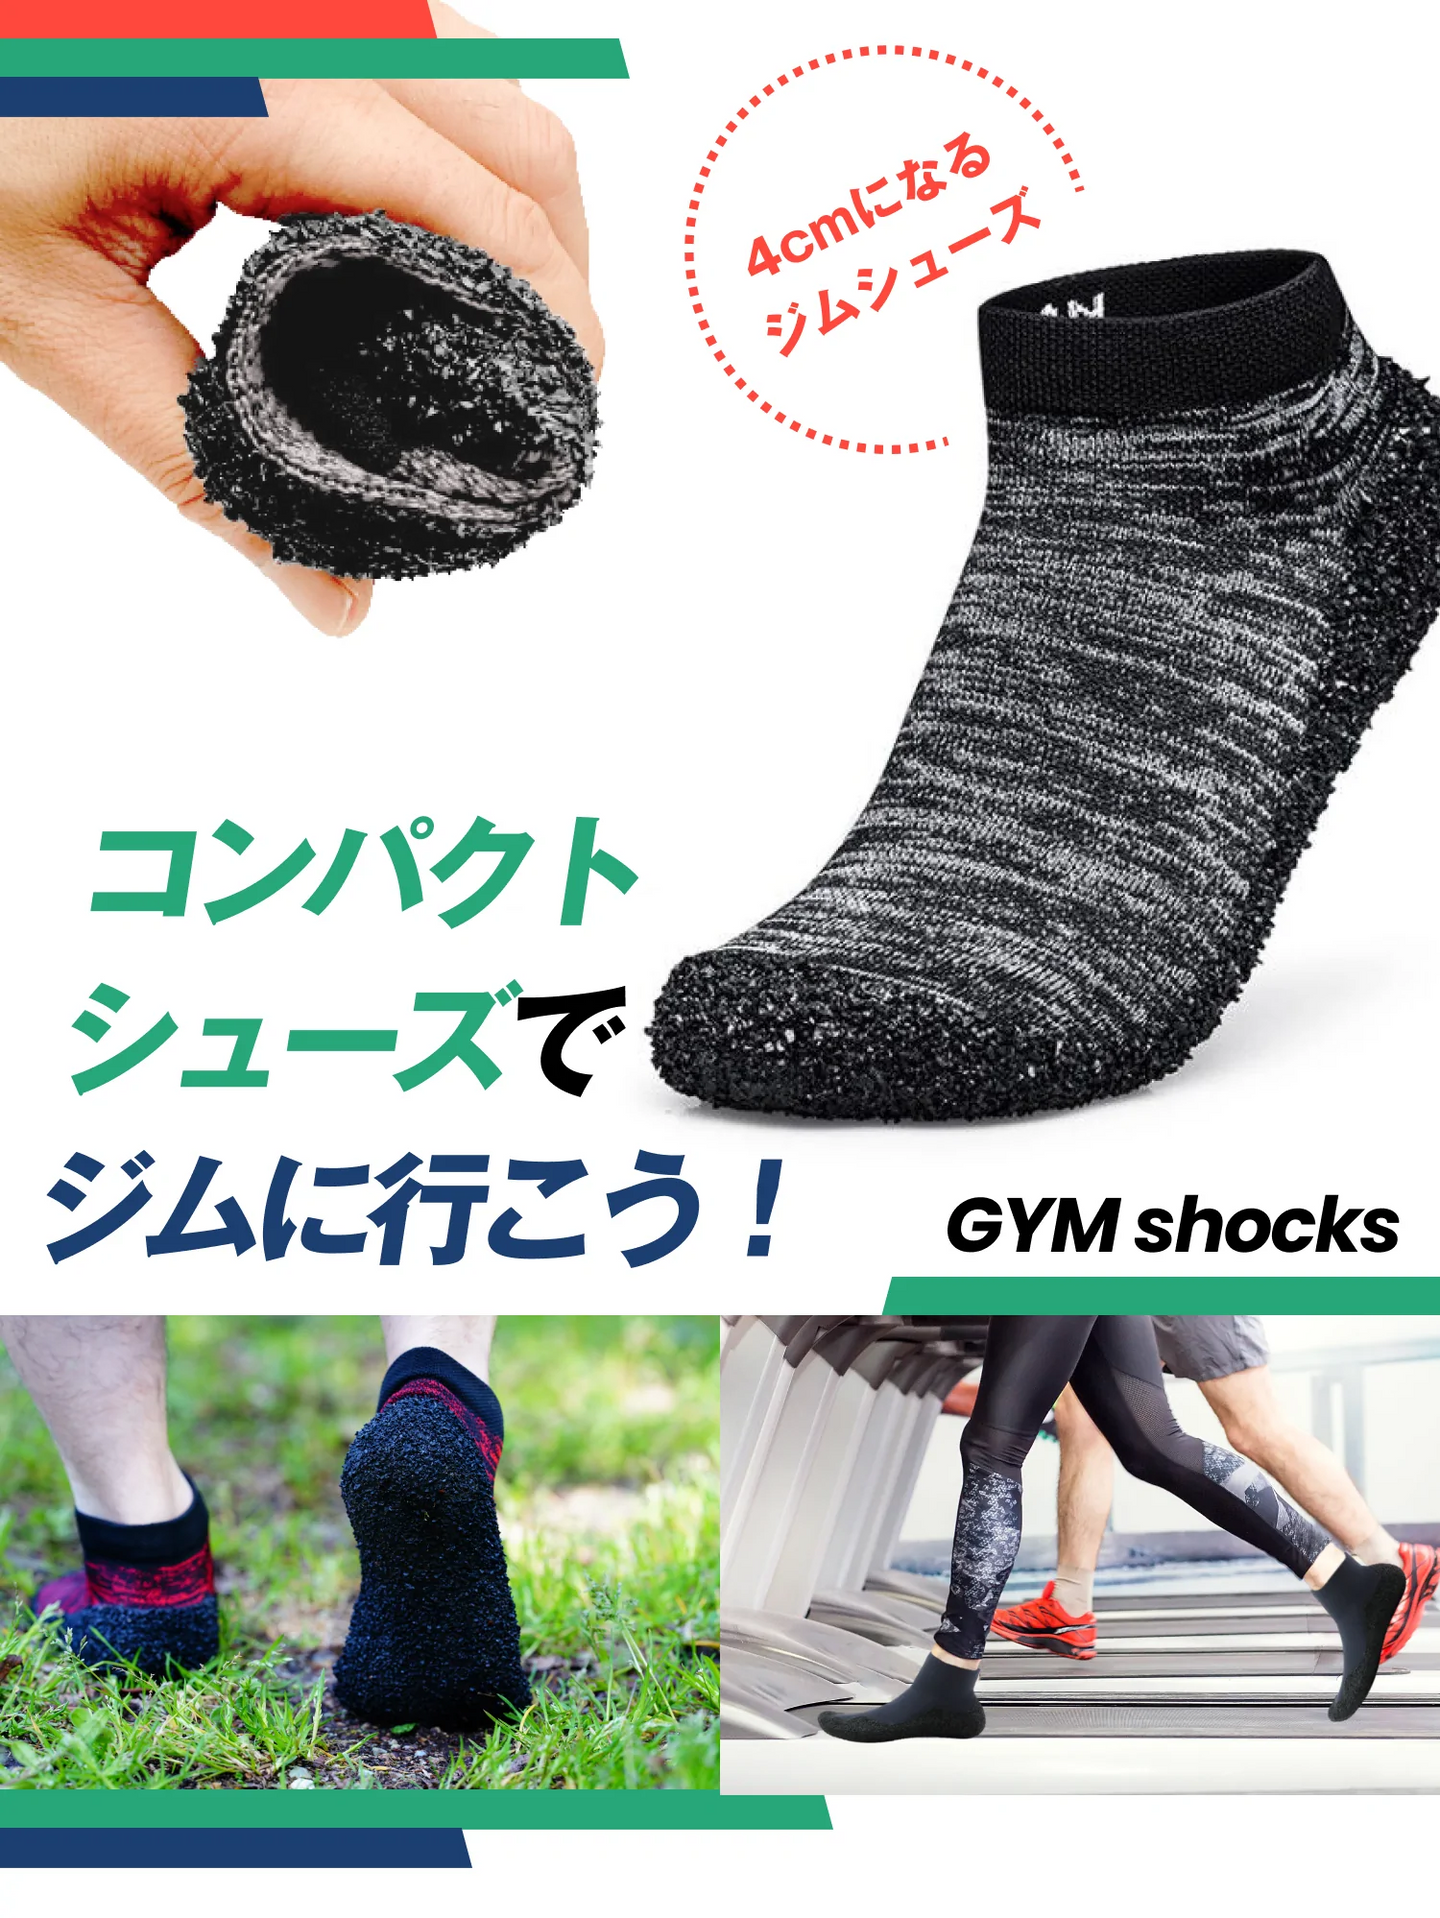 靴下と靴のいいとこどり！洗えて丈夫な ポータブルシューズ『GYM Shocks』【GS01-B】